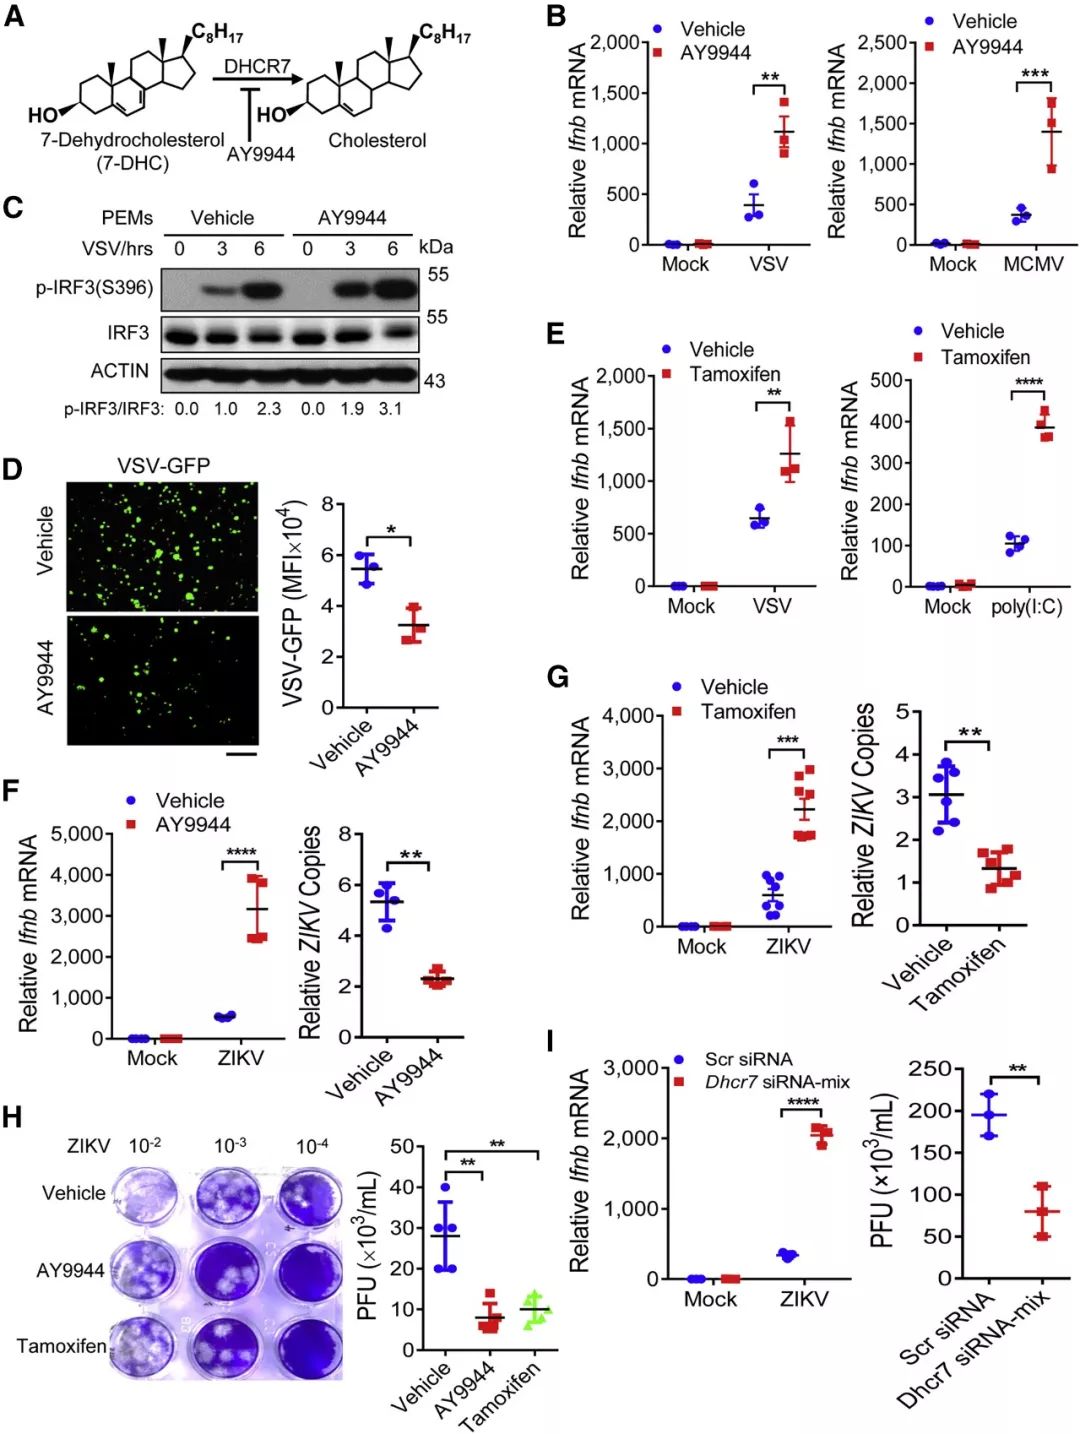 图 2. DHCR7 抑制剂 AY9944 和 Tamoxifen 保护巨噬细胞免受多种病毒感染